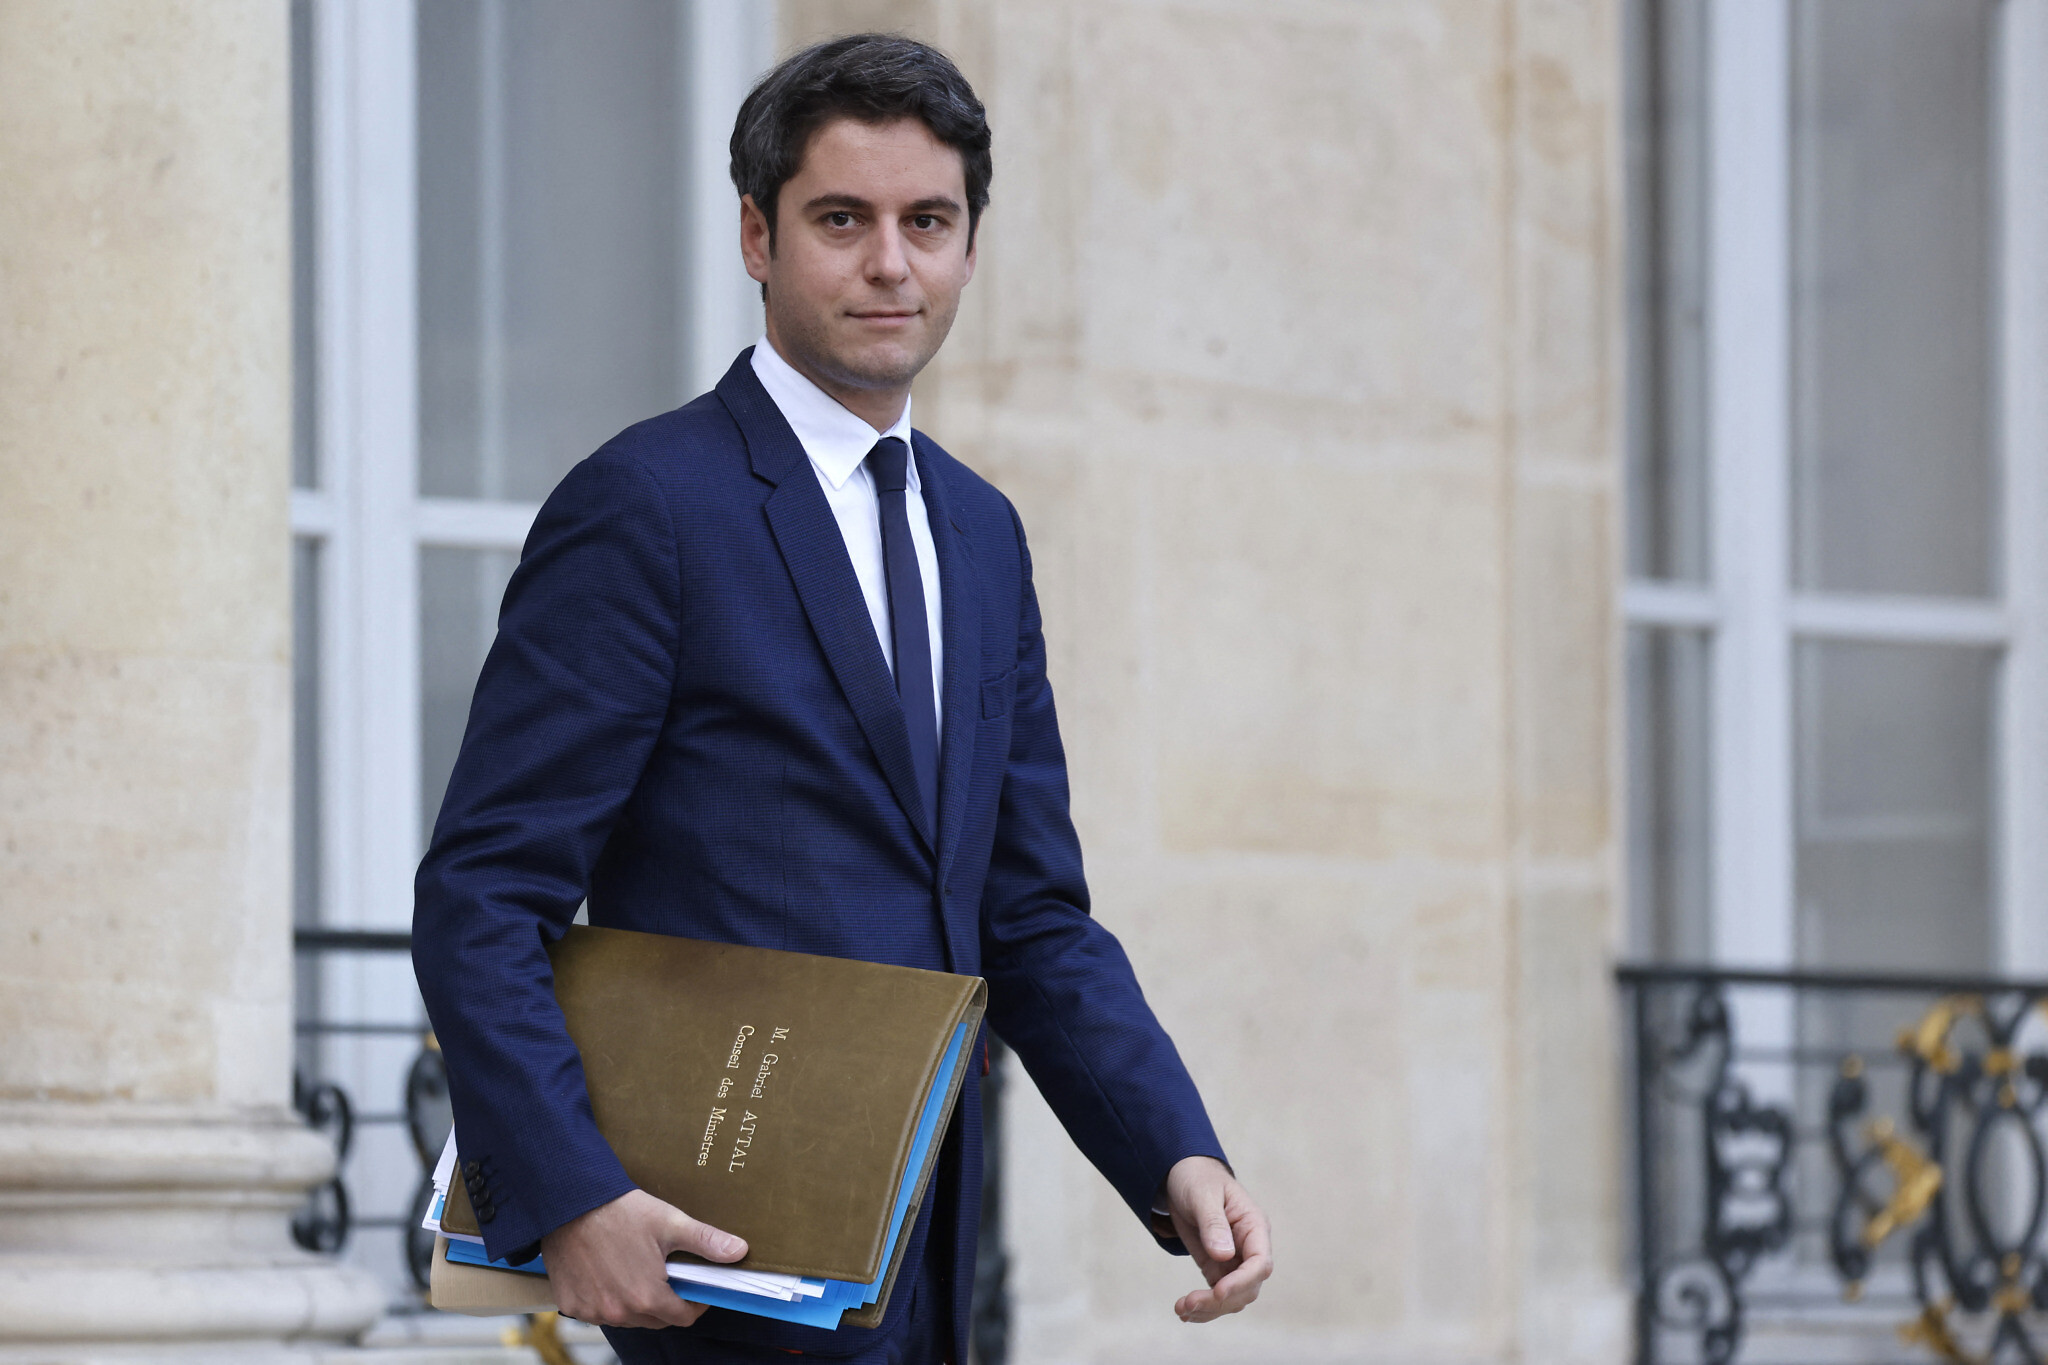 Γκαμπριέλ Ατάλ: Ποιος είναι ο νεότερος πρωθυπουργός της Γαλλίας – Γιατί ο Μακρόν παίζει τώρα τον τελευταίο «άσο» του